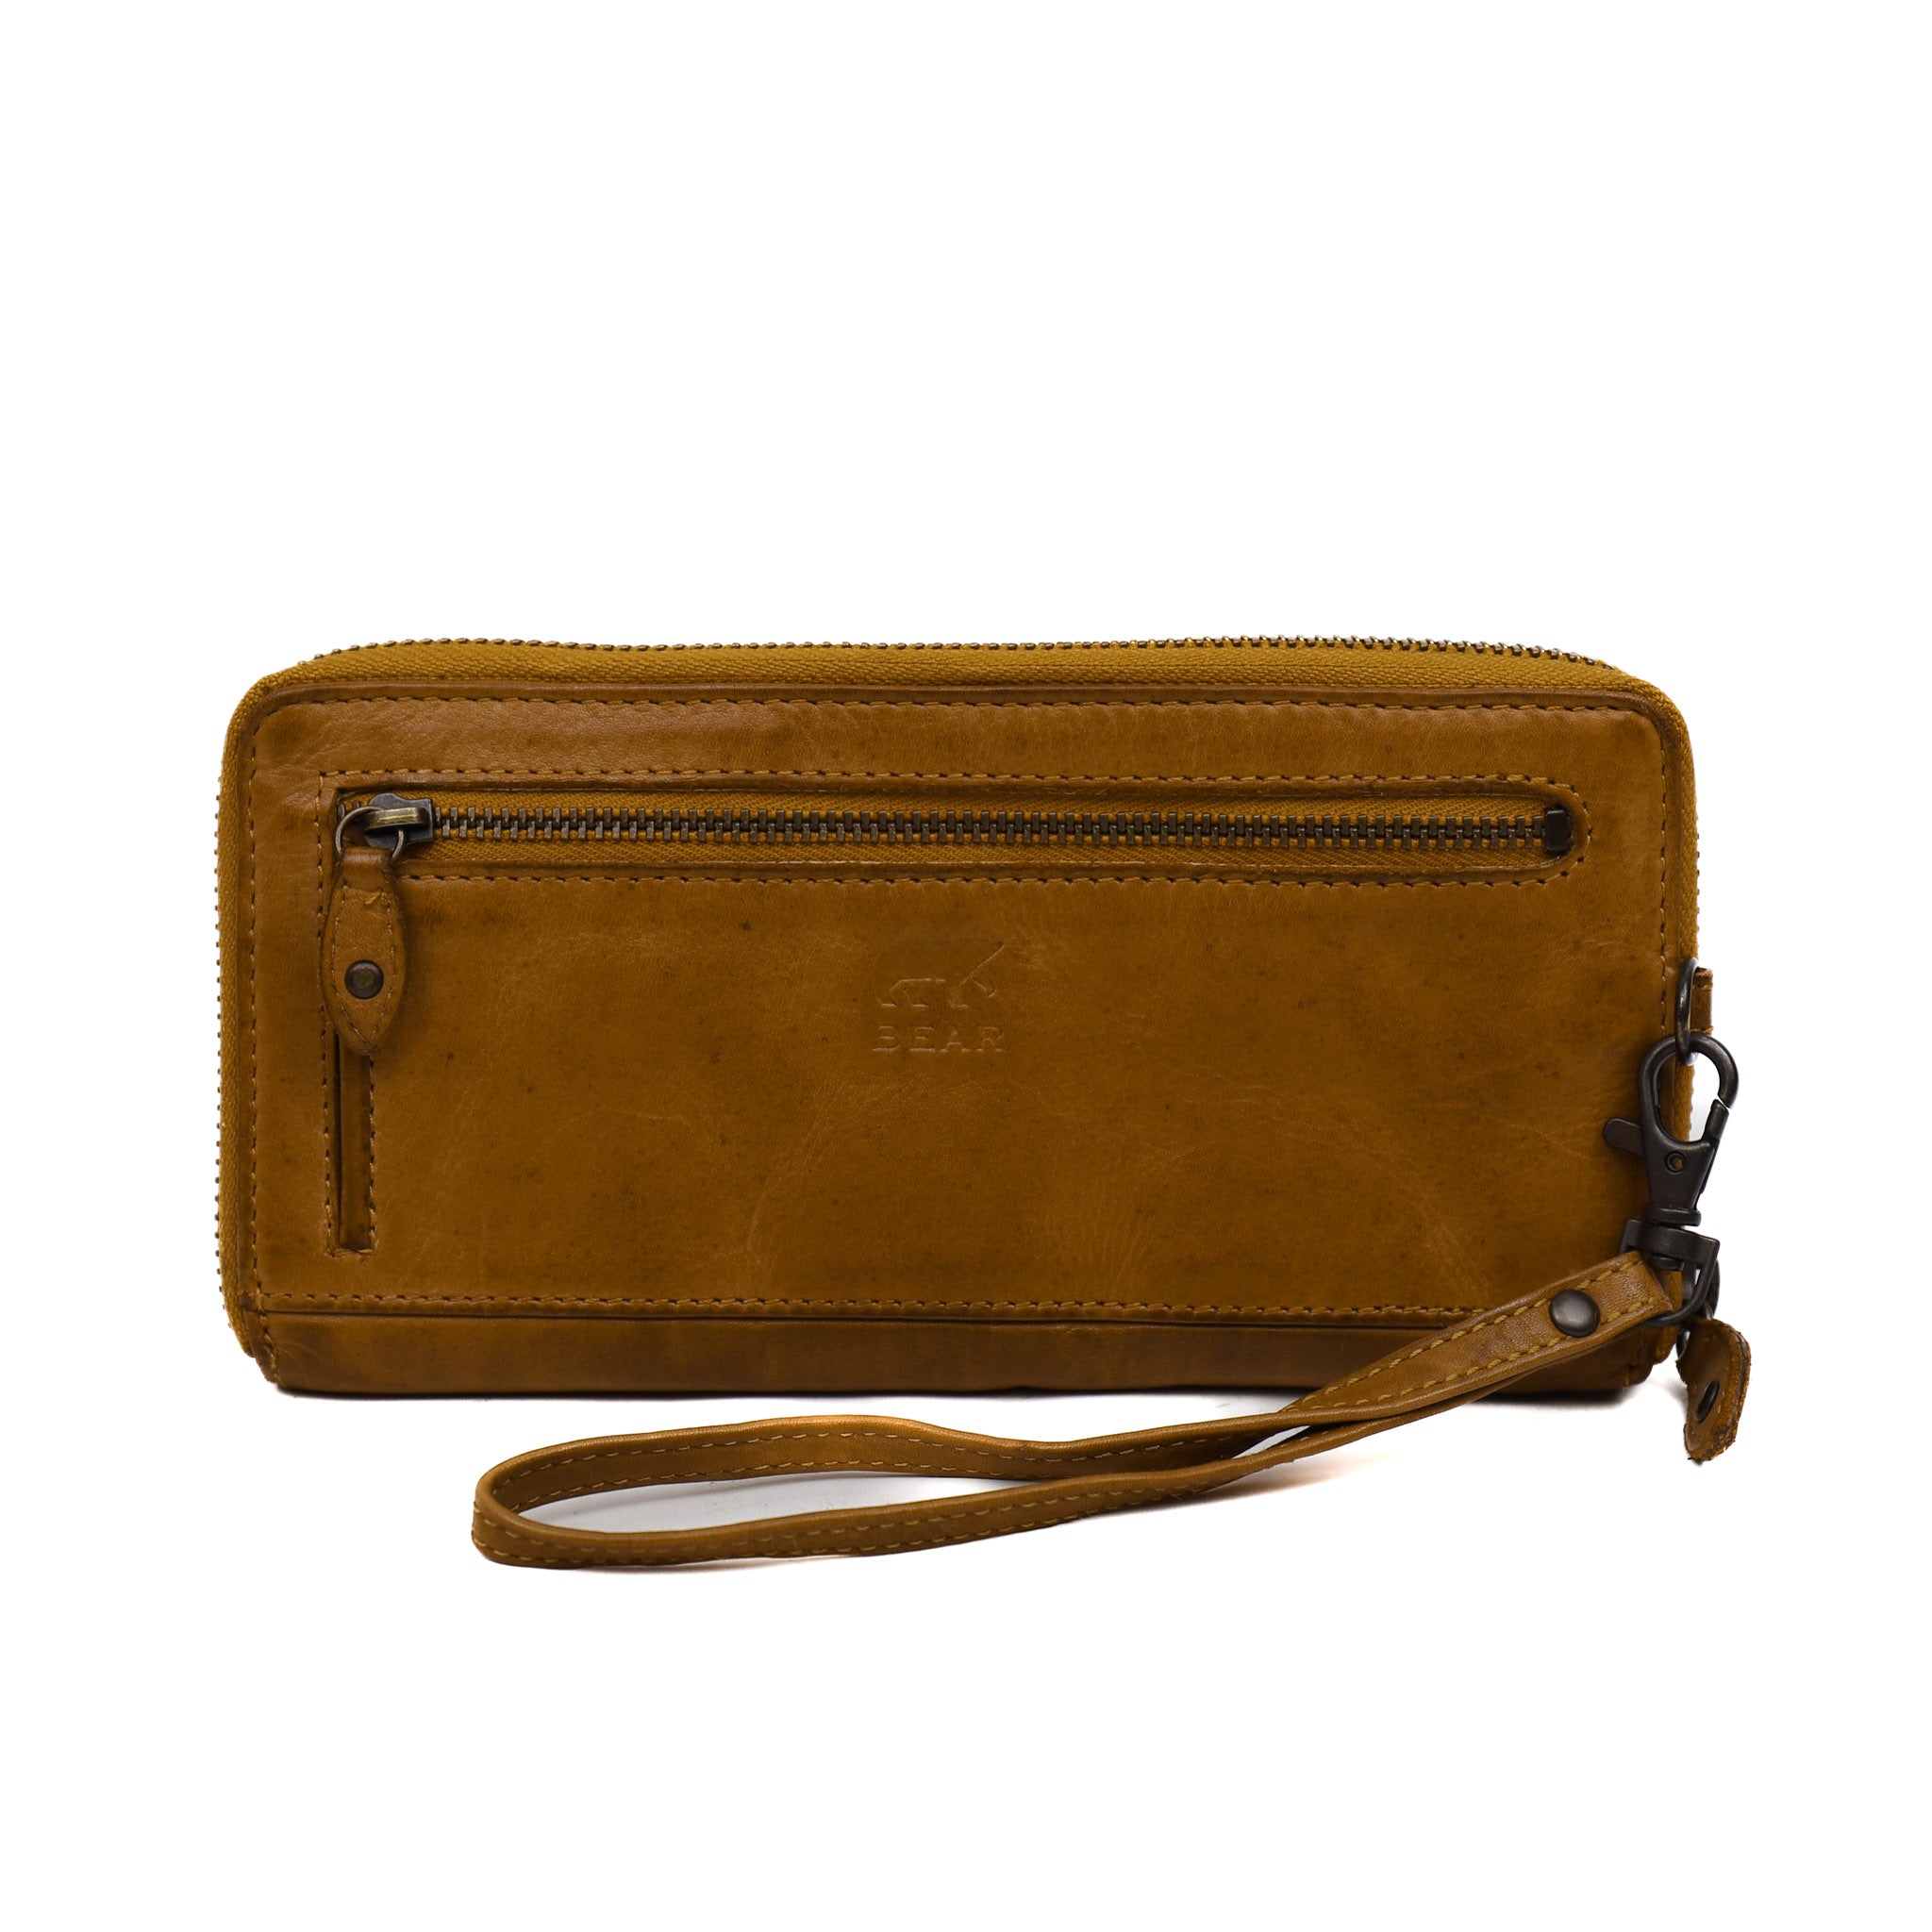 Zipper wallet 'Sofie' yellow - CL 15882